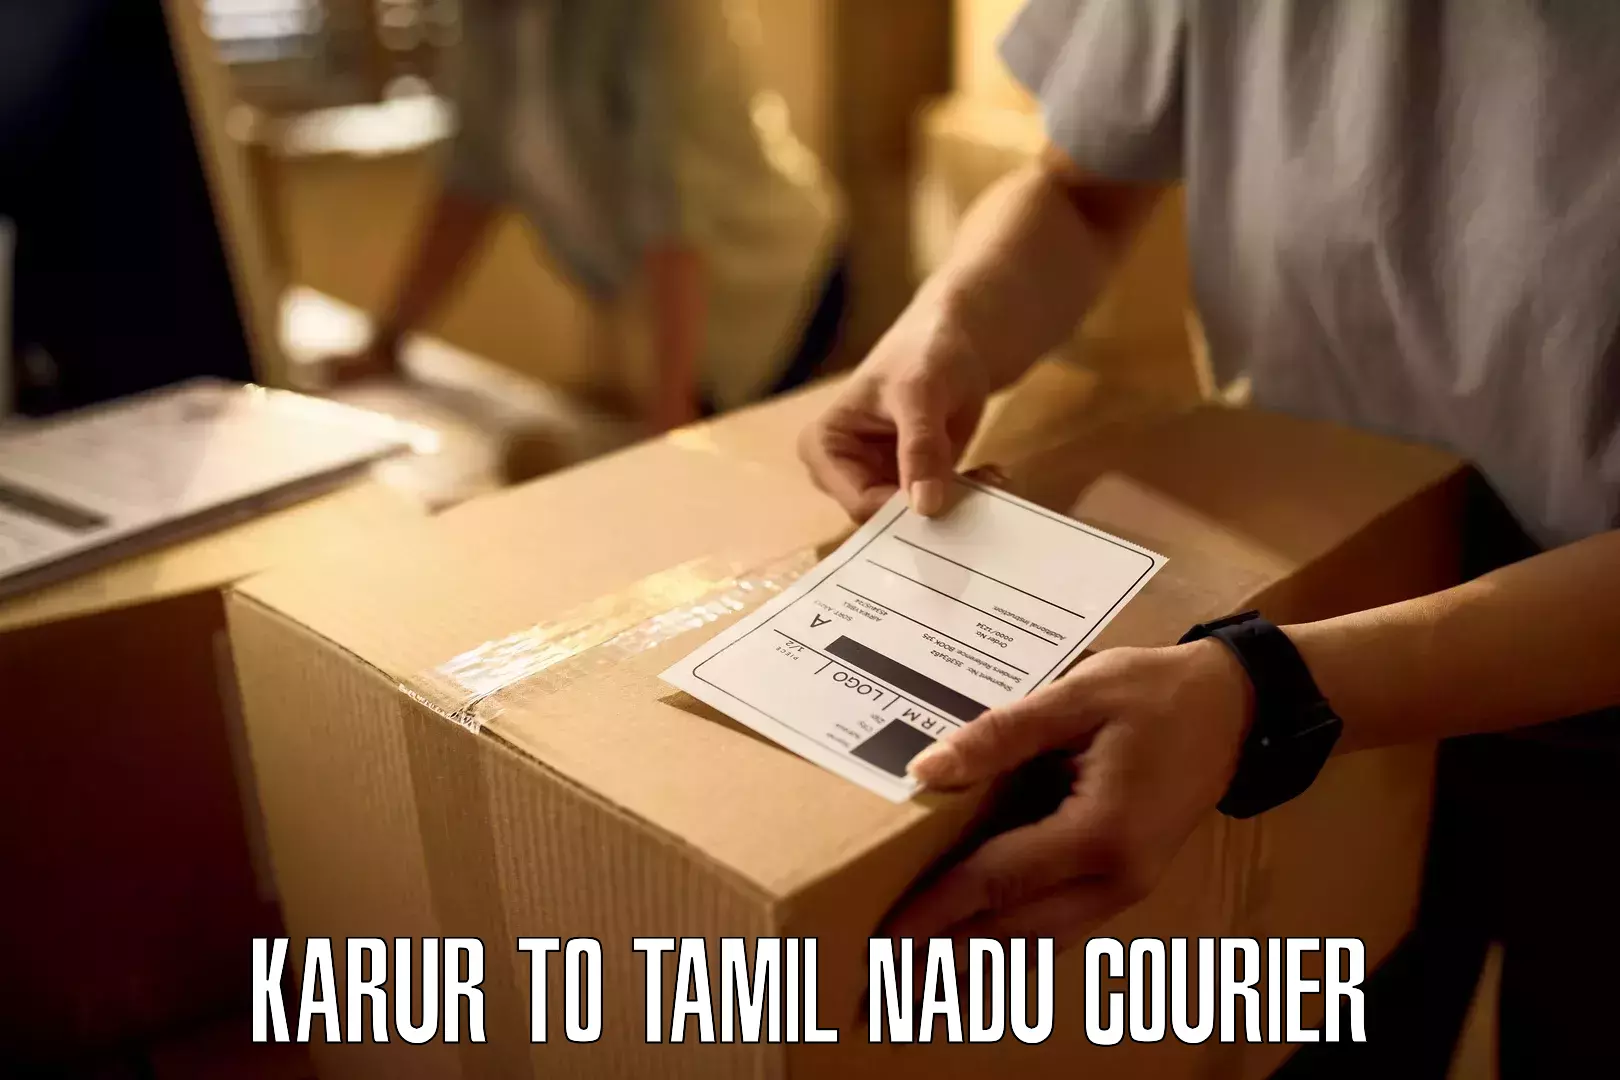 Efficient freight service Karur to Thirukoilure